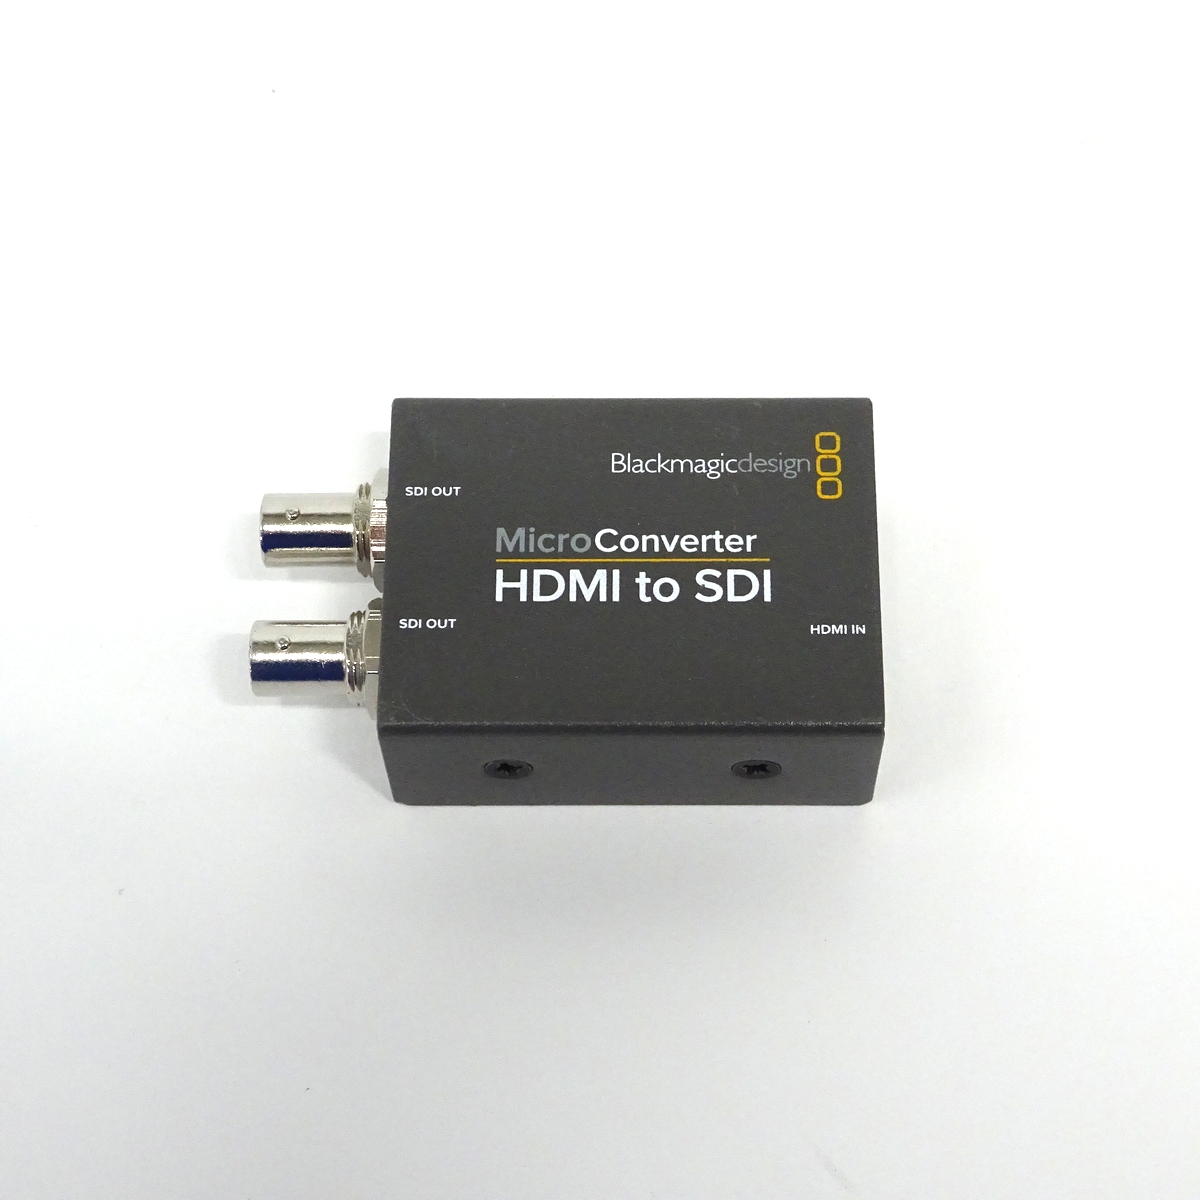 【中古】Blackmagic Design Micro Converter HDMI to SDI コンバーター 【愛知発送1】